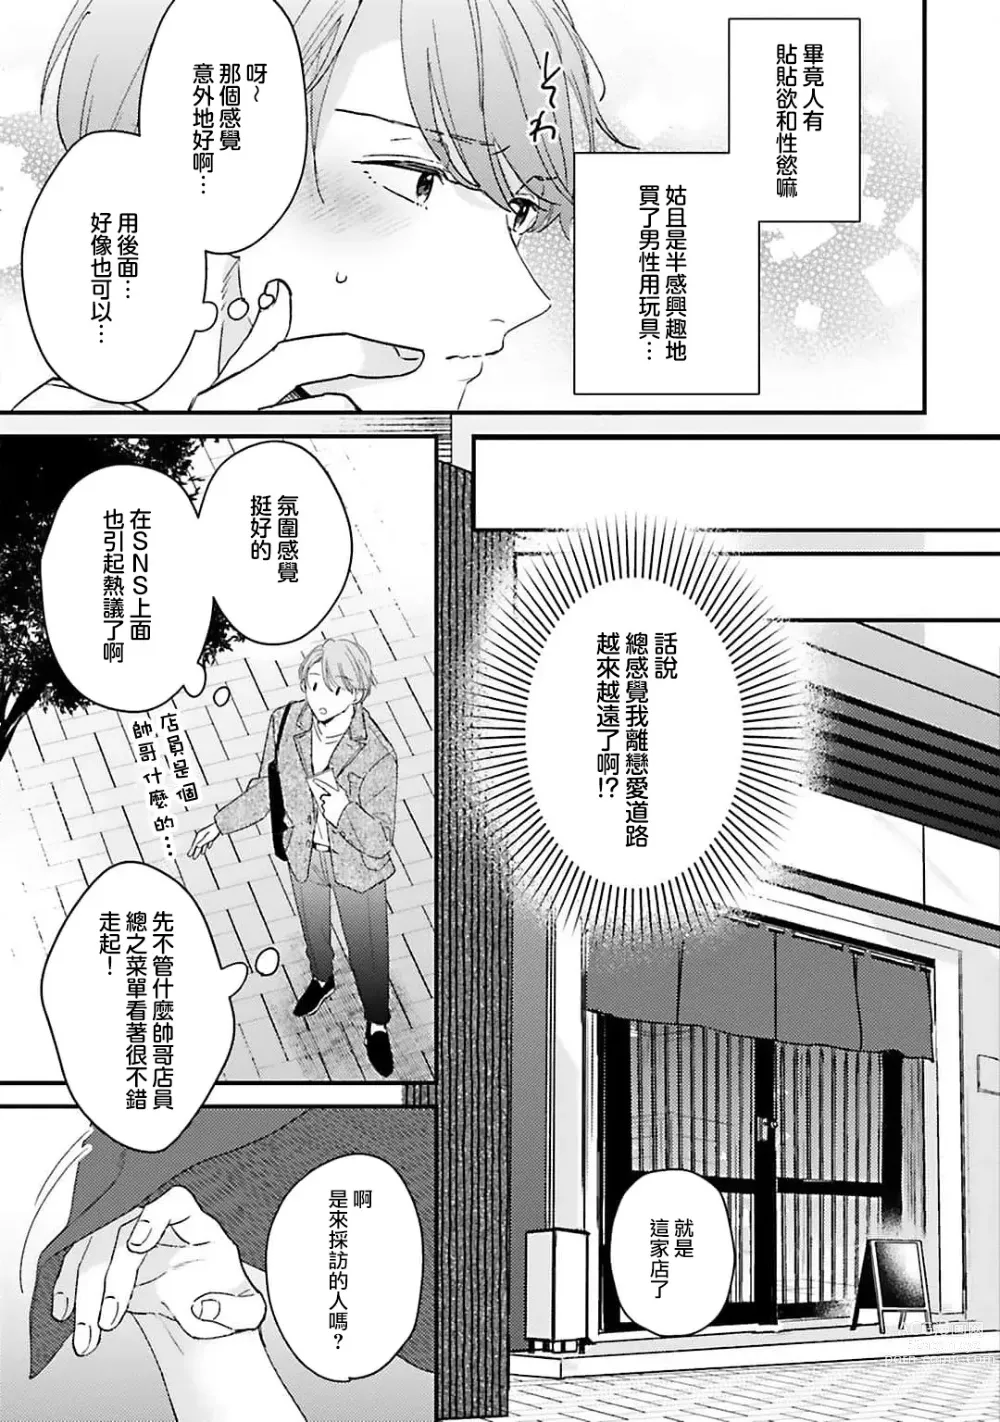 Page 6 of manga 绽放的恋爱皆为醉与甜1